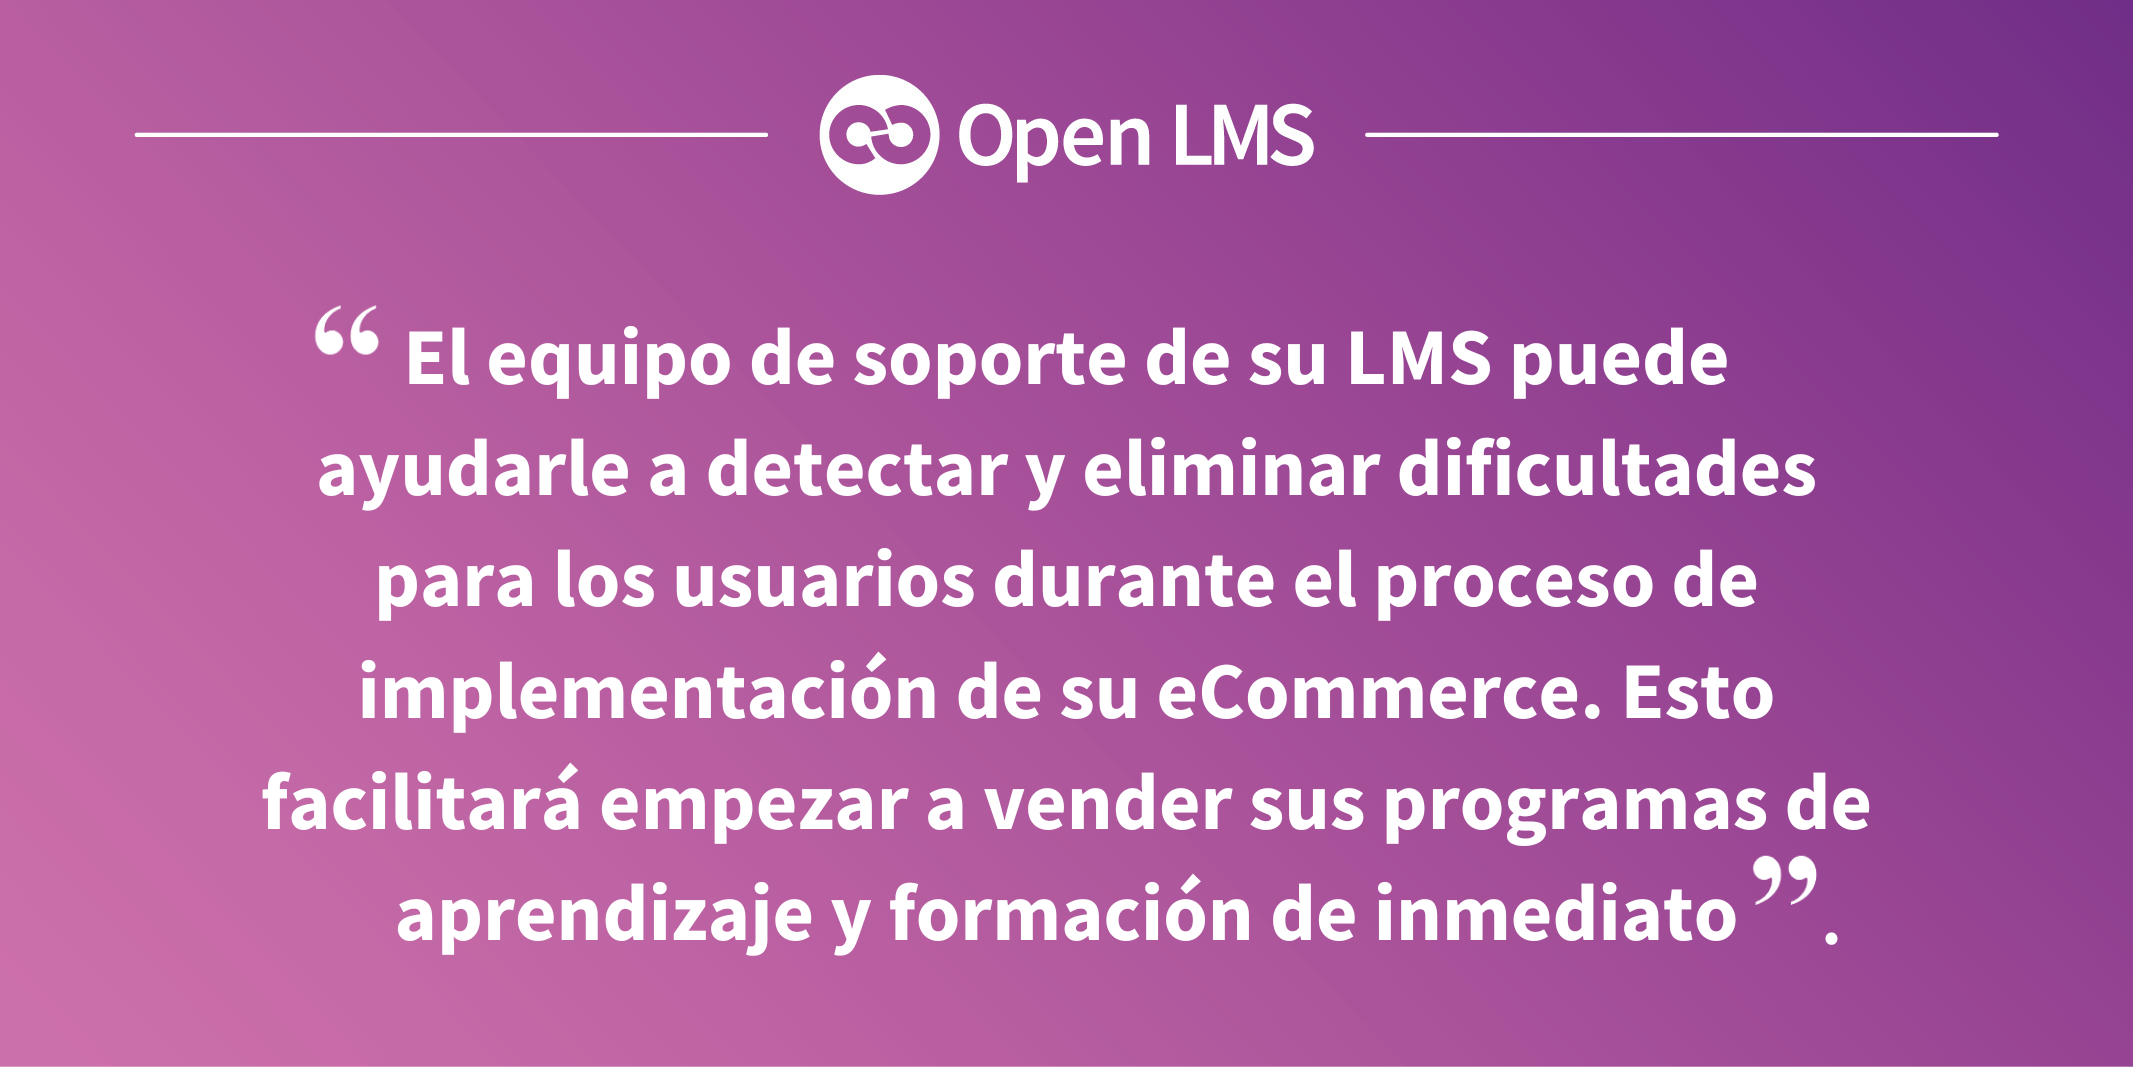 El equipo de soporte de su LMS puede ayudarle a detectar y eliminar dificultades para los usuarios durante el proceso de implementación de su eCommerce. Esto facilitará empezar a vender sus programas de aprendizaje y formación de inmediato